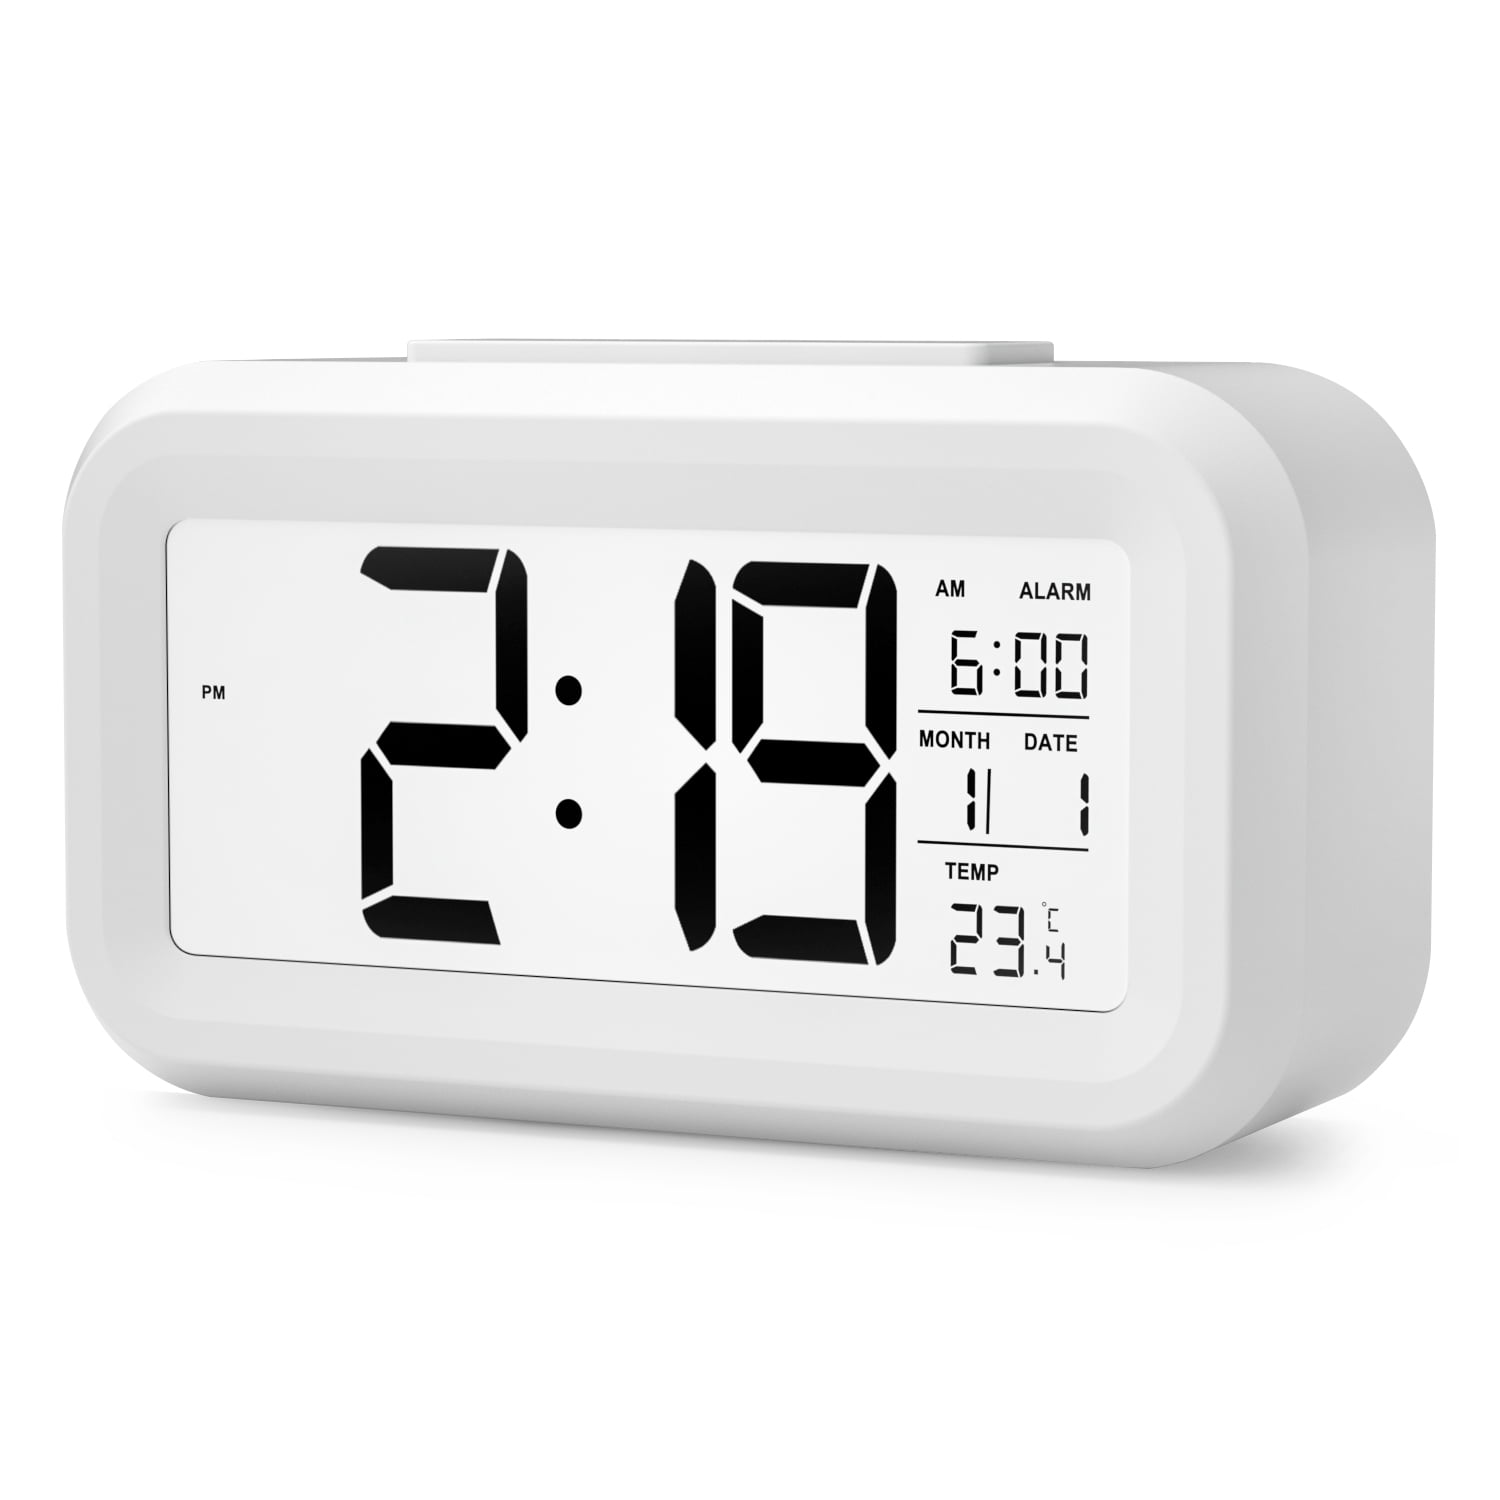 Black w/Silver HeQiao Digital Wall Clocks Large Decorative LCD Alarm Clock 